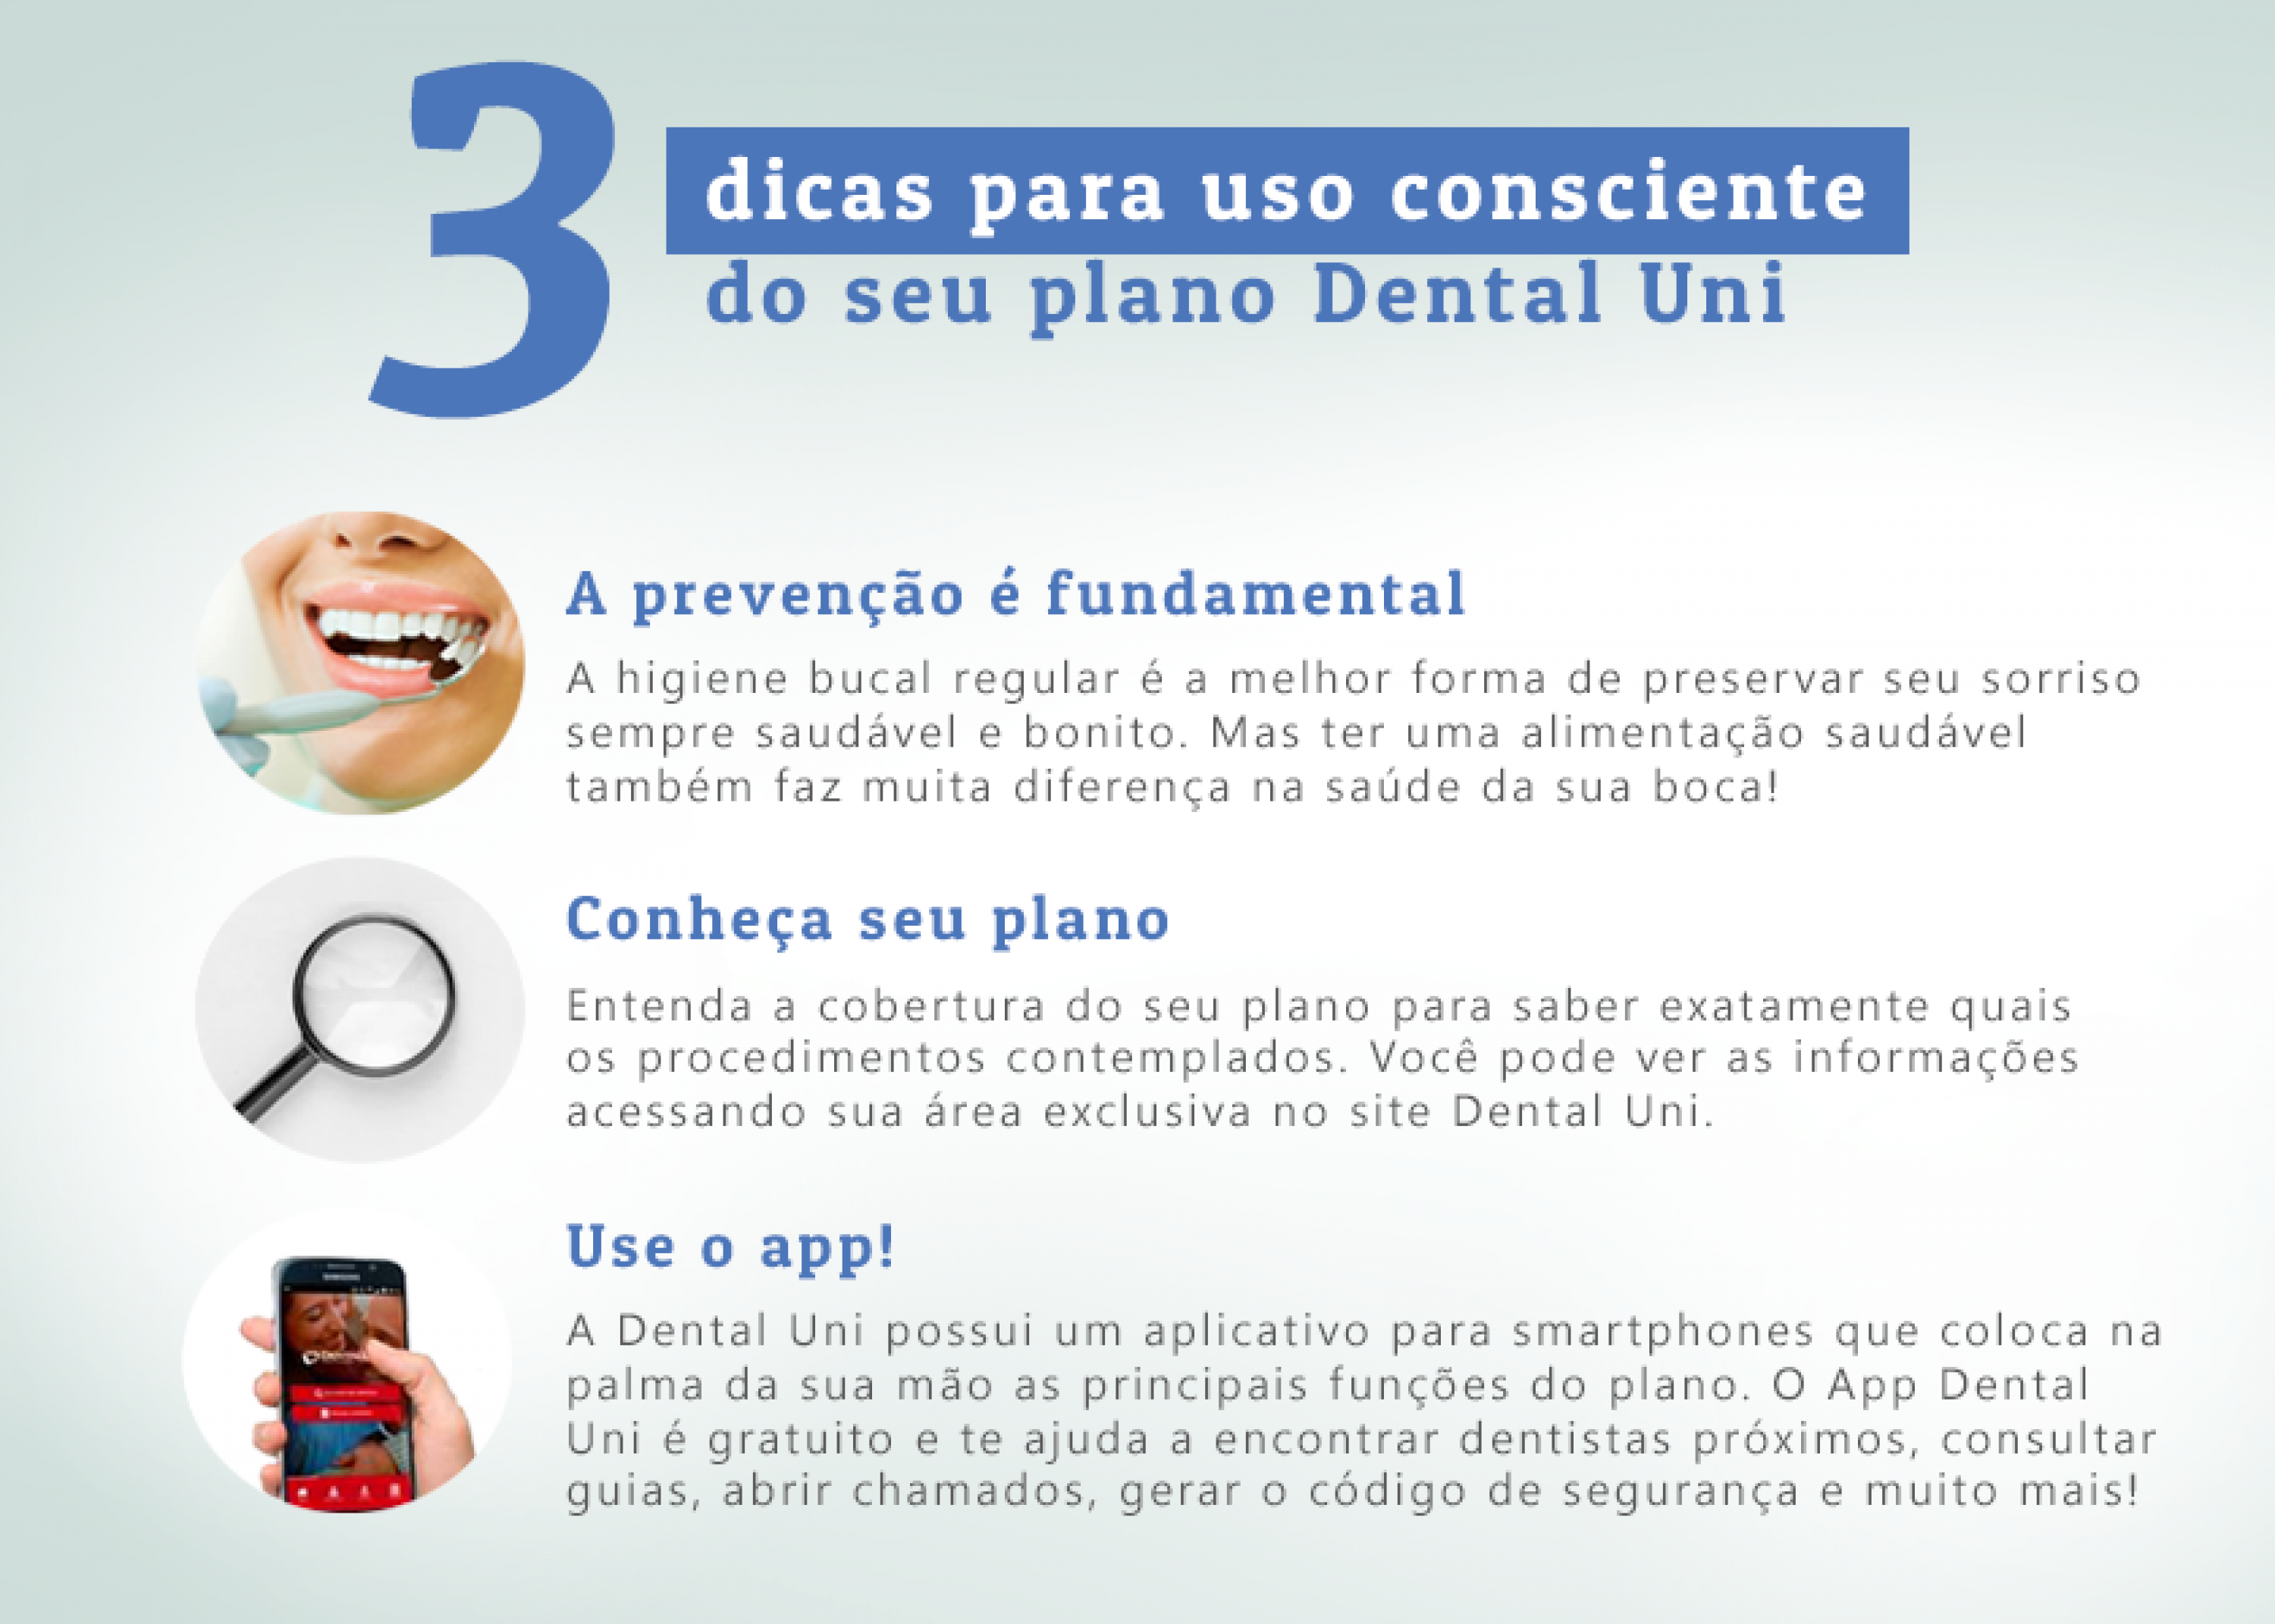 Confira as dicas da Dental Uni para usar bem o seu plano. 